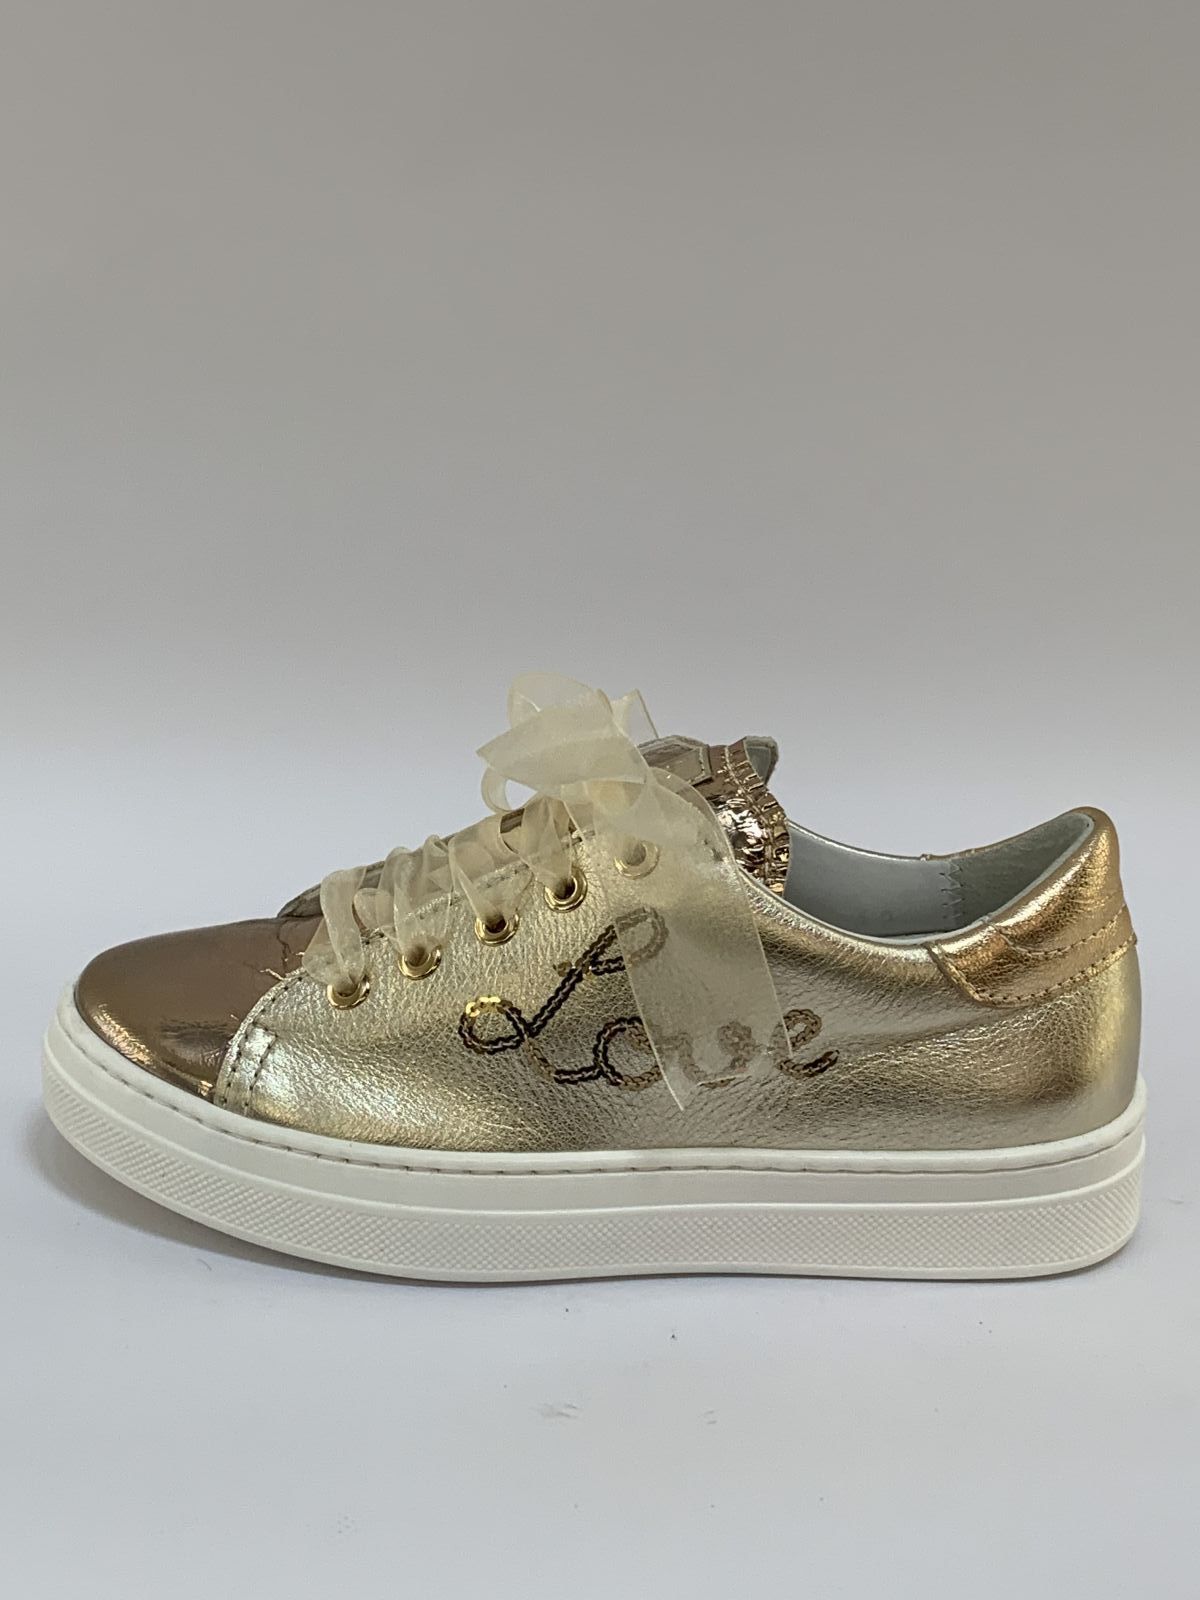 Clan beven huisvrouw Beberlis Sneaker Goud meisjes (Sneaker Love - 21285) - Schoenen Luca